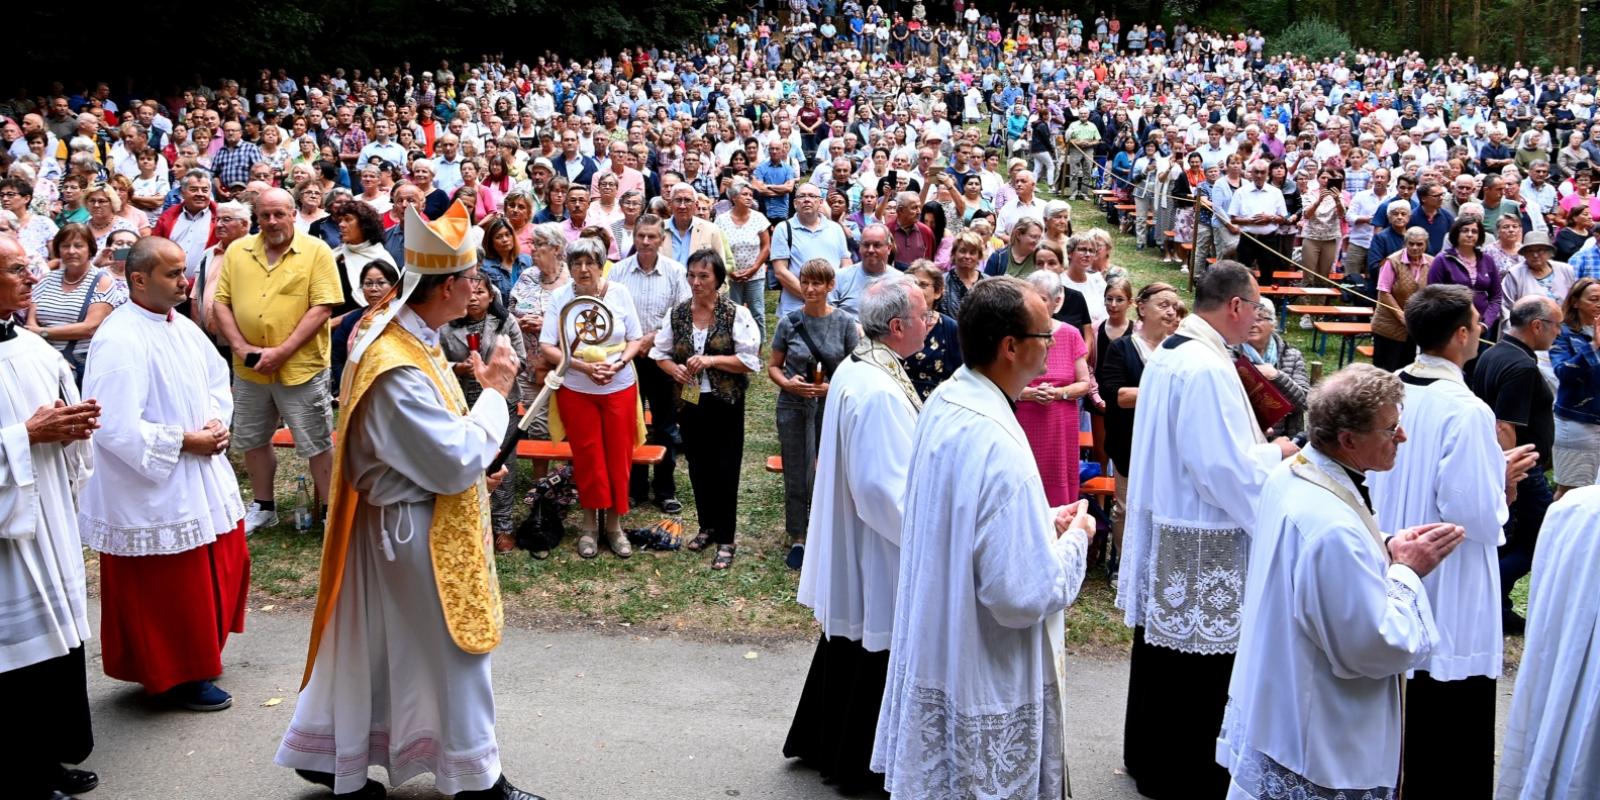 An Maria Himmelfahrt 2022 feierte der Kölner Erzbischof Rainer Maria Kardinal Woelki ein feierliches Pontifikalamt im schwäbischen Wallfahrtsort Maria Vesperbild.